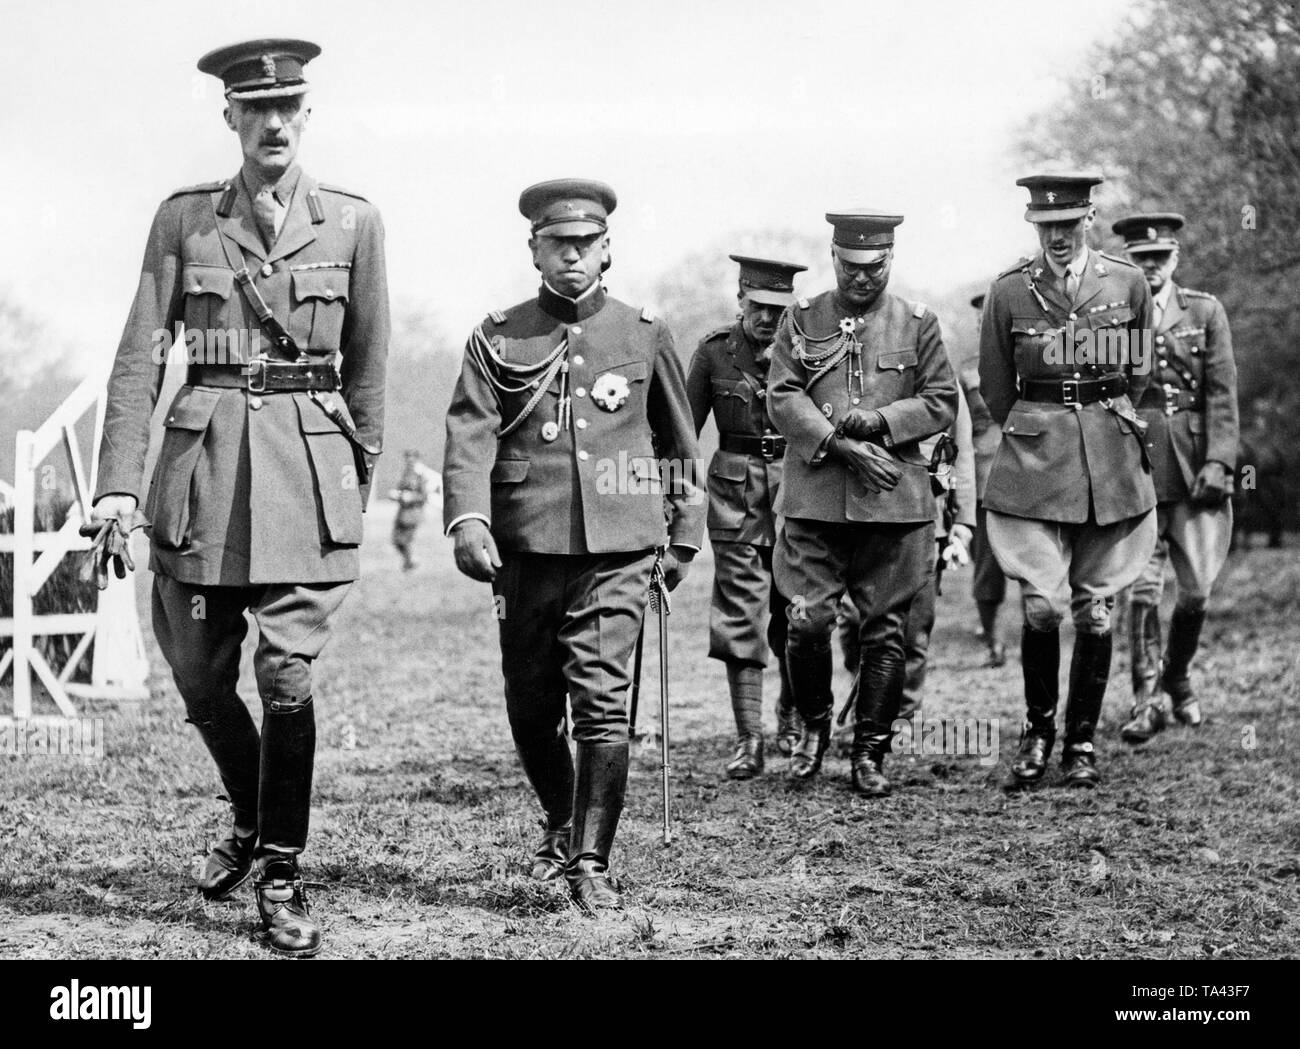 Die japanische Prinz Kaya (rechts) mit allgemeinen Farren Marschall (links) bei einer militärischen Manöver der Britischen Armee in Aldershot. Prinz Kaya war der Cousin des Japanischen Empress Kojun, die Frau von Kaiser Hirohito. Stockfoto